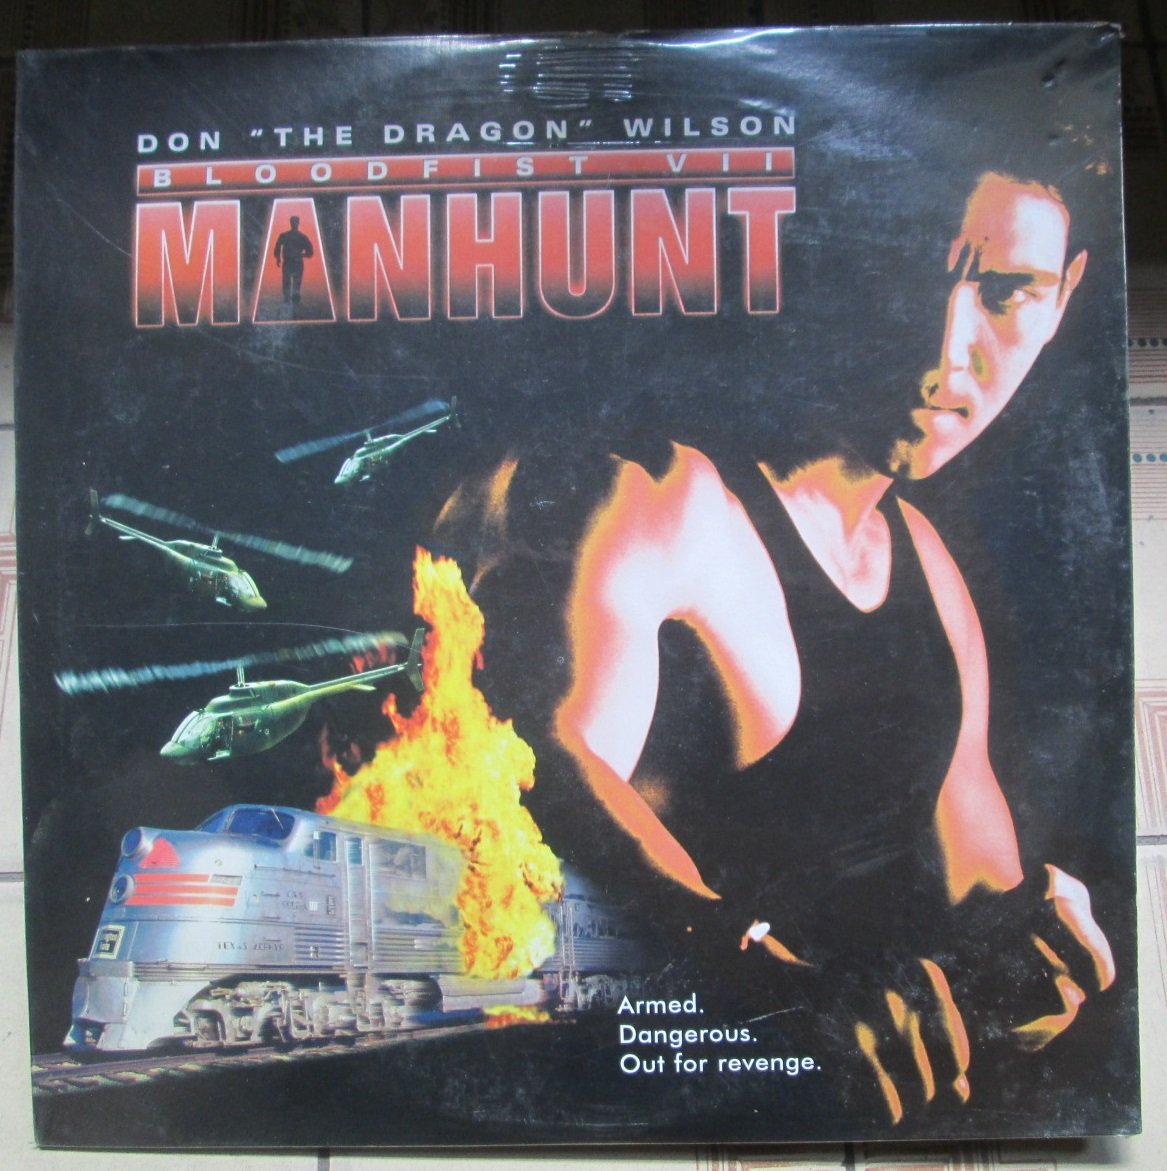 進口ld影碟 全新未拆 Bloodfist Vii Manhunt追捕 電影 1995 Yahoo奇摩拍賣